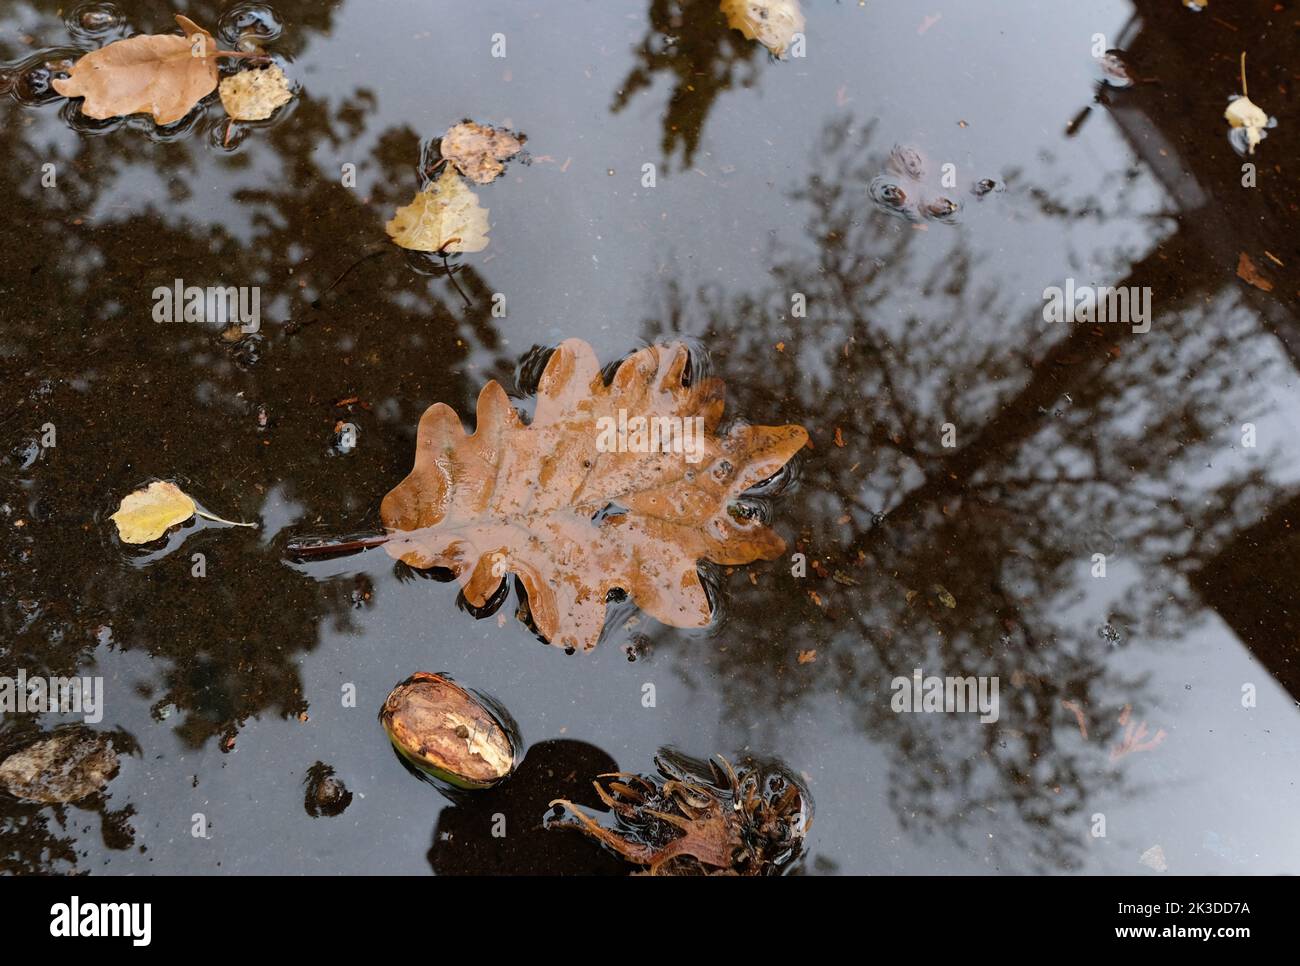 Stuttgart, Deutschland. 26. September 2022. Bäume spiegeln sich in einer Pfütze, in der die Blätter schweben. Quelle: Bernd Weißbrod/dpa/Alamy Live News Stockfoto